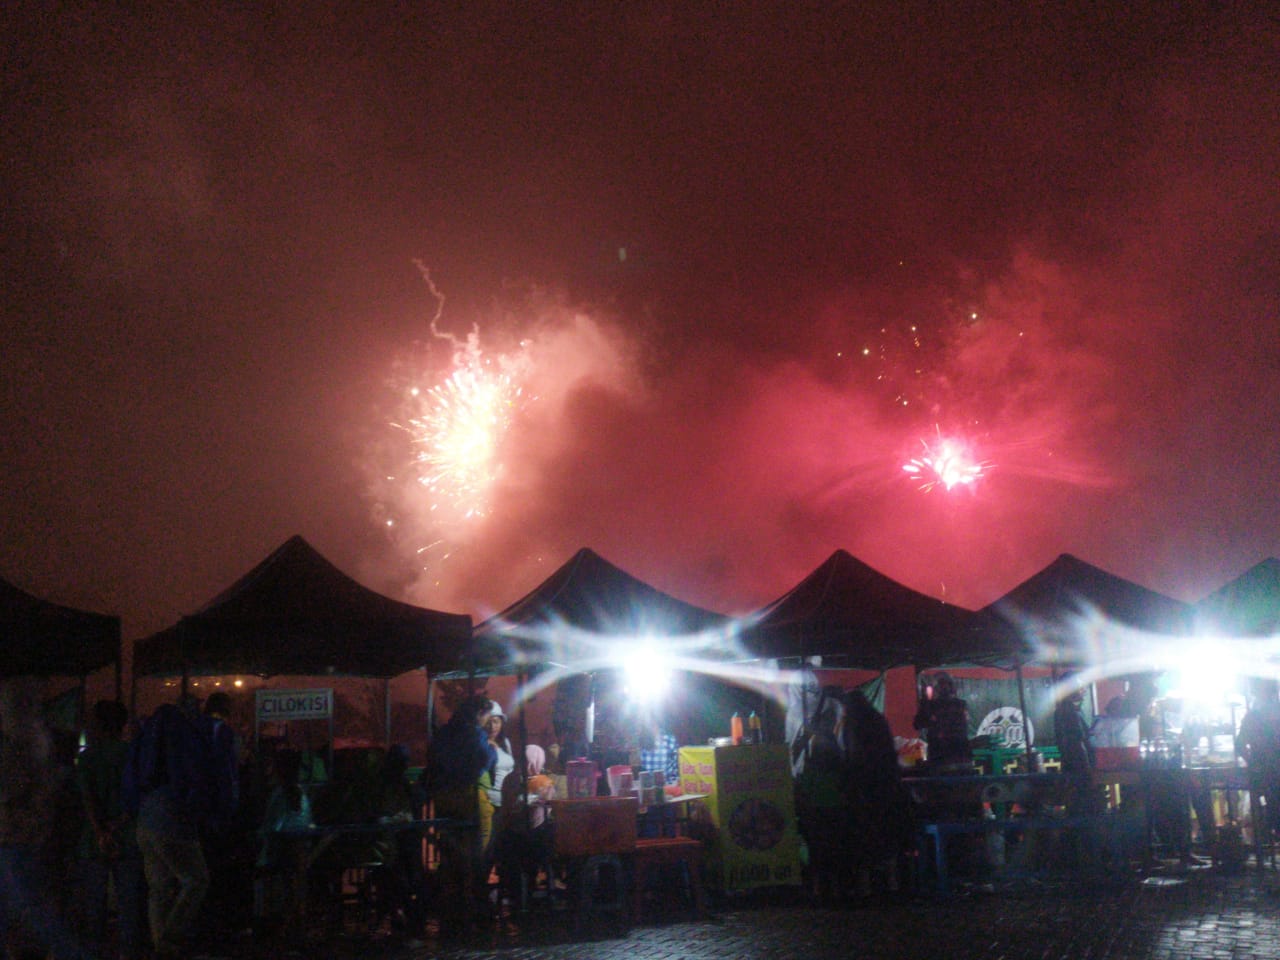 Perayaan malam tahun baru di Tandon Ciater, Jalan Widya Kencana Ciater, Buaran Serpong, Tangsel, Rabu (1/1/2020) malam sepi pengunjung.